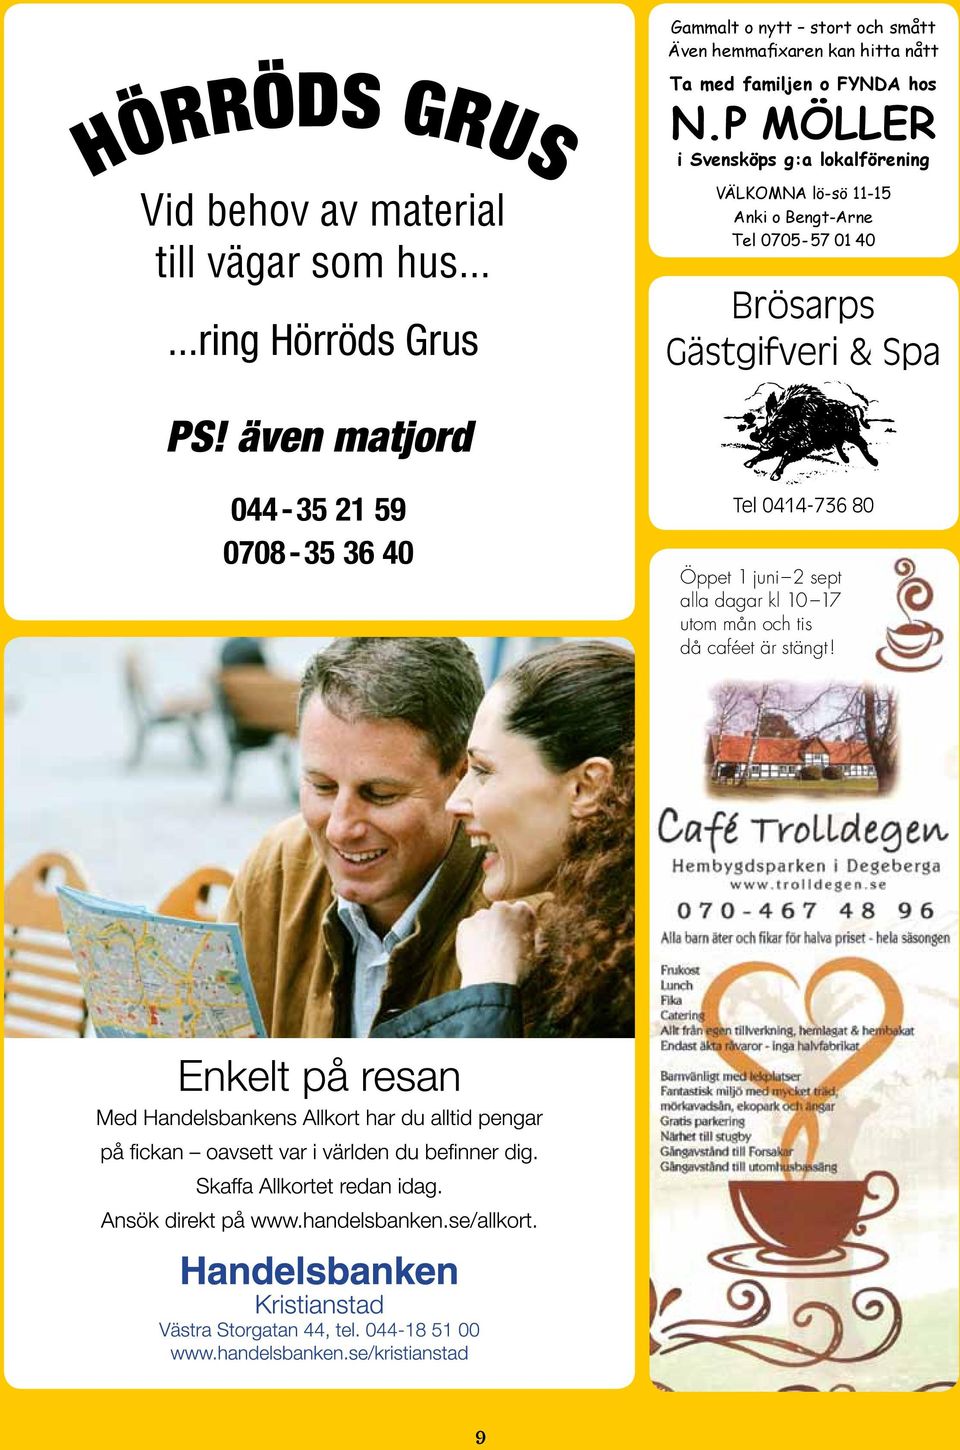 P MÖLLER i Svensköps g:a lokalförening VÄLKOMNA lö-sö 11-15 Anki o Bengt-Arne Tel 0705-57 01 40 Brösarps